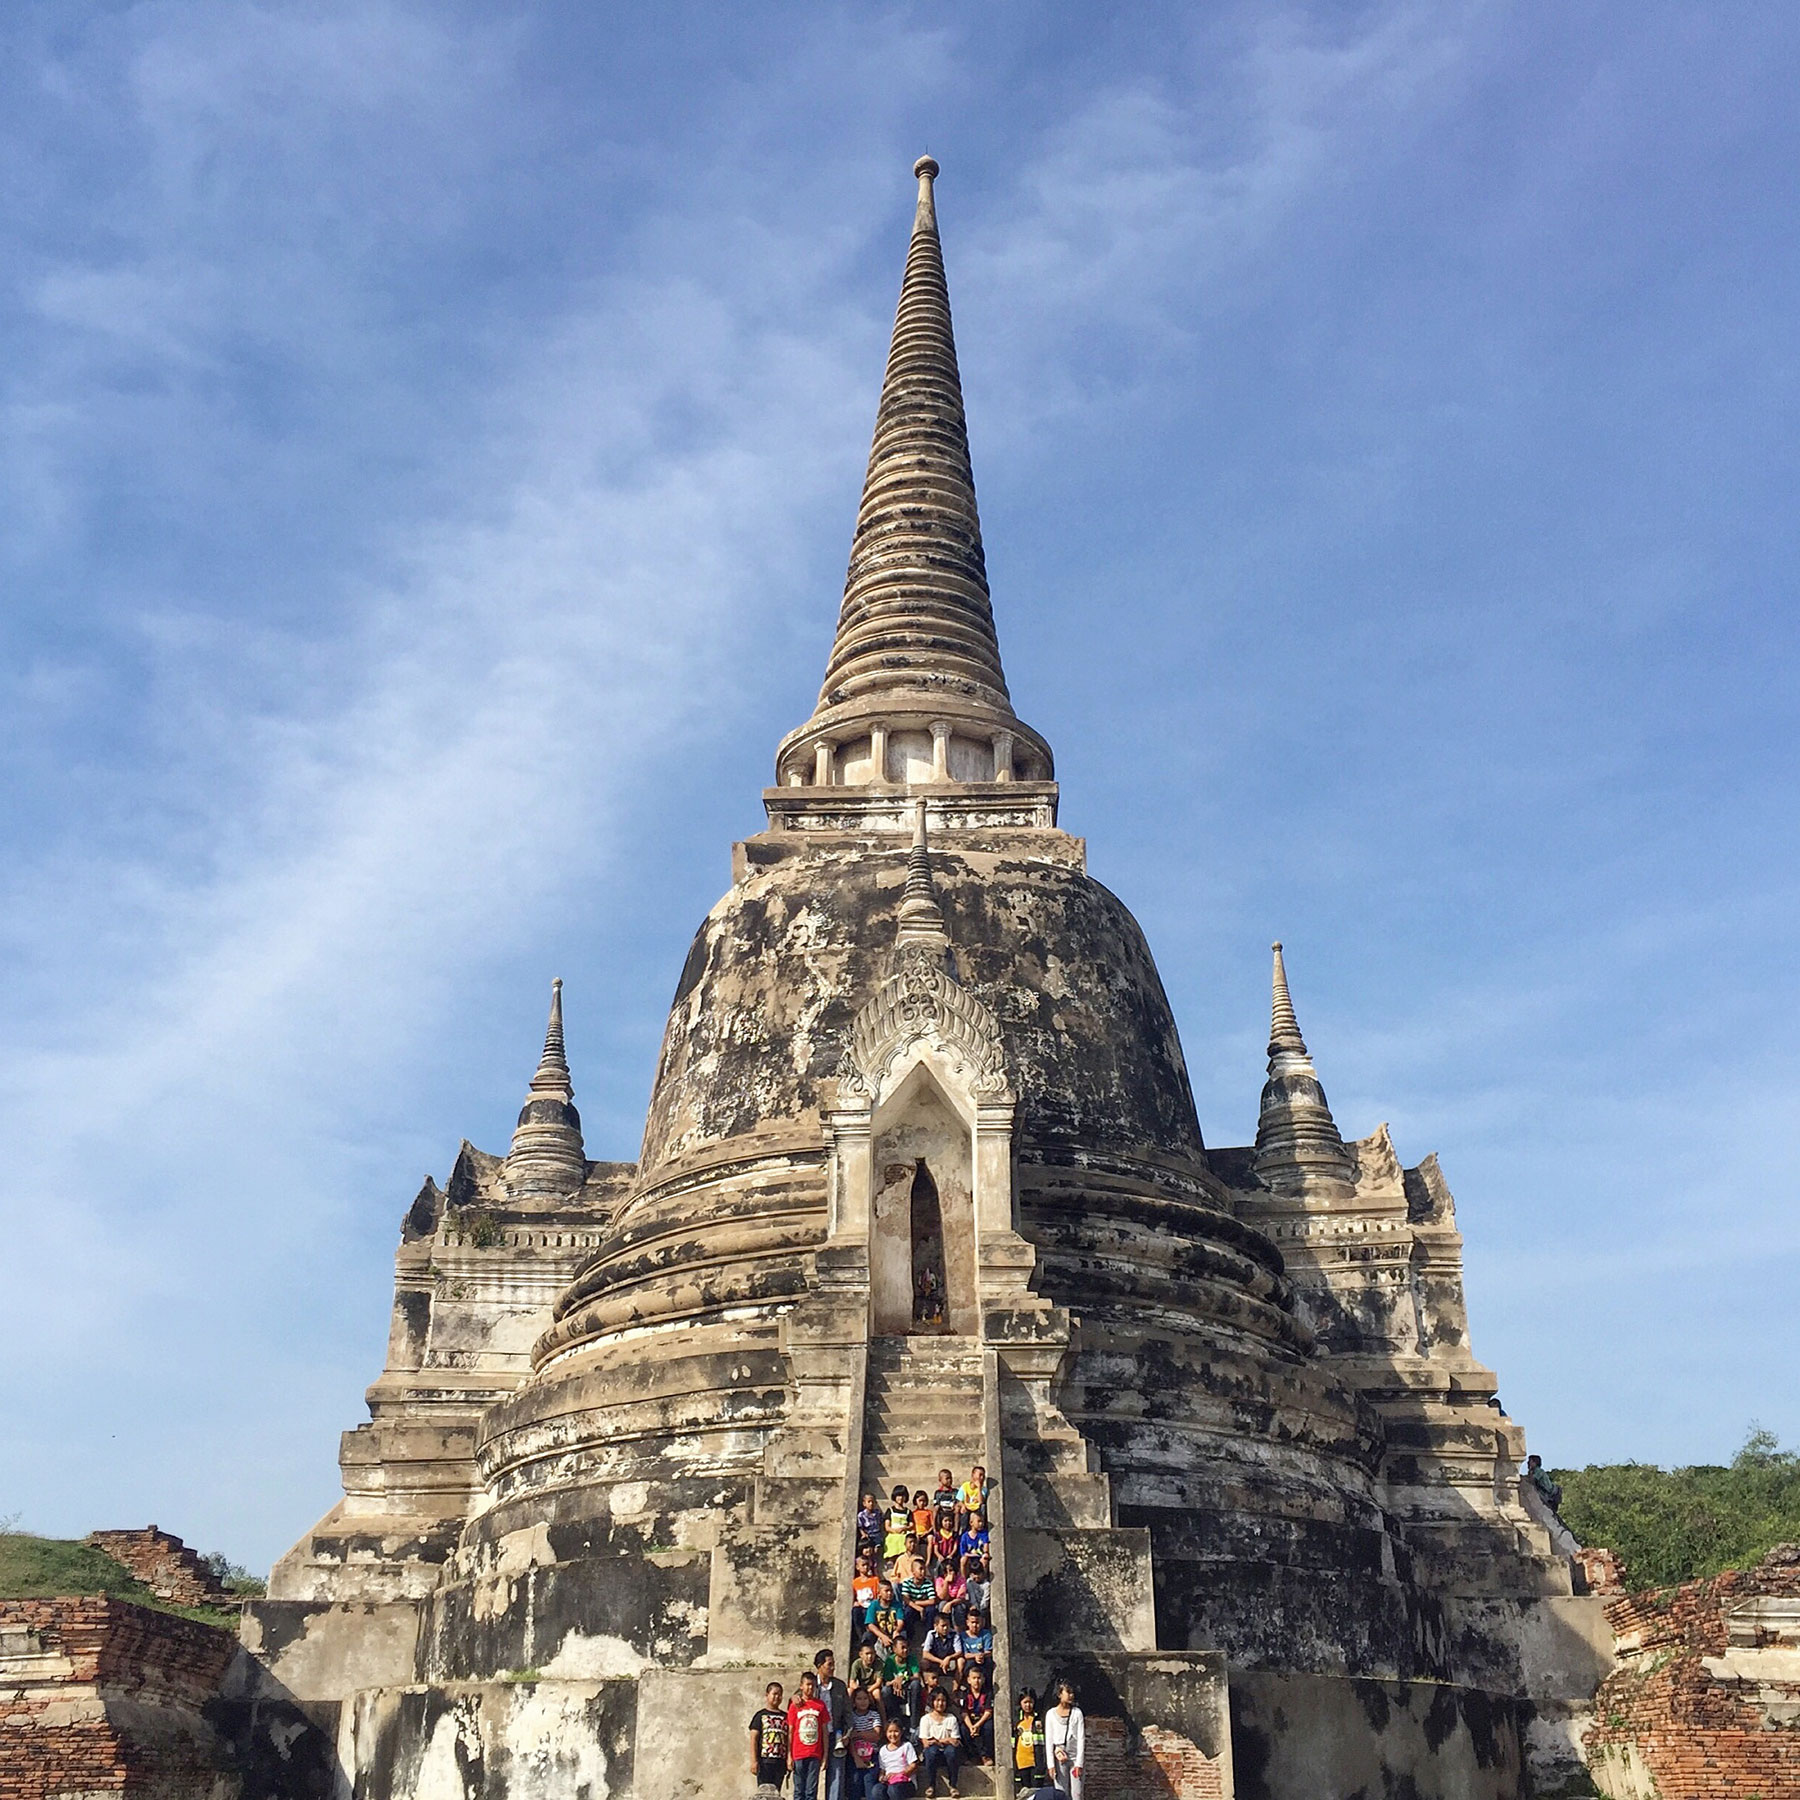  Wat Phra Si Sanphet 